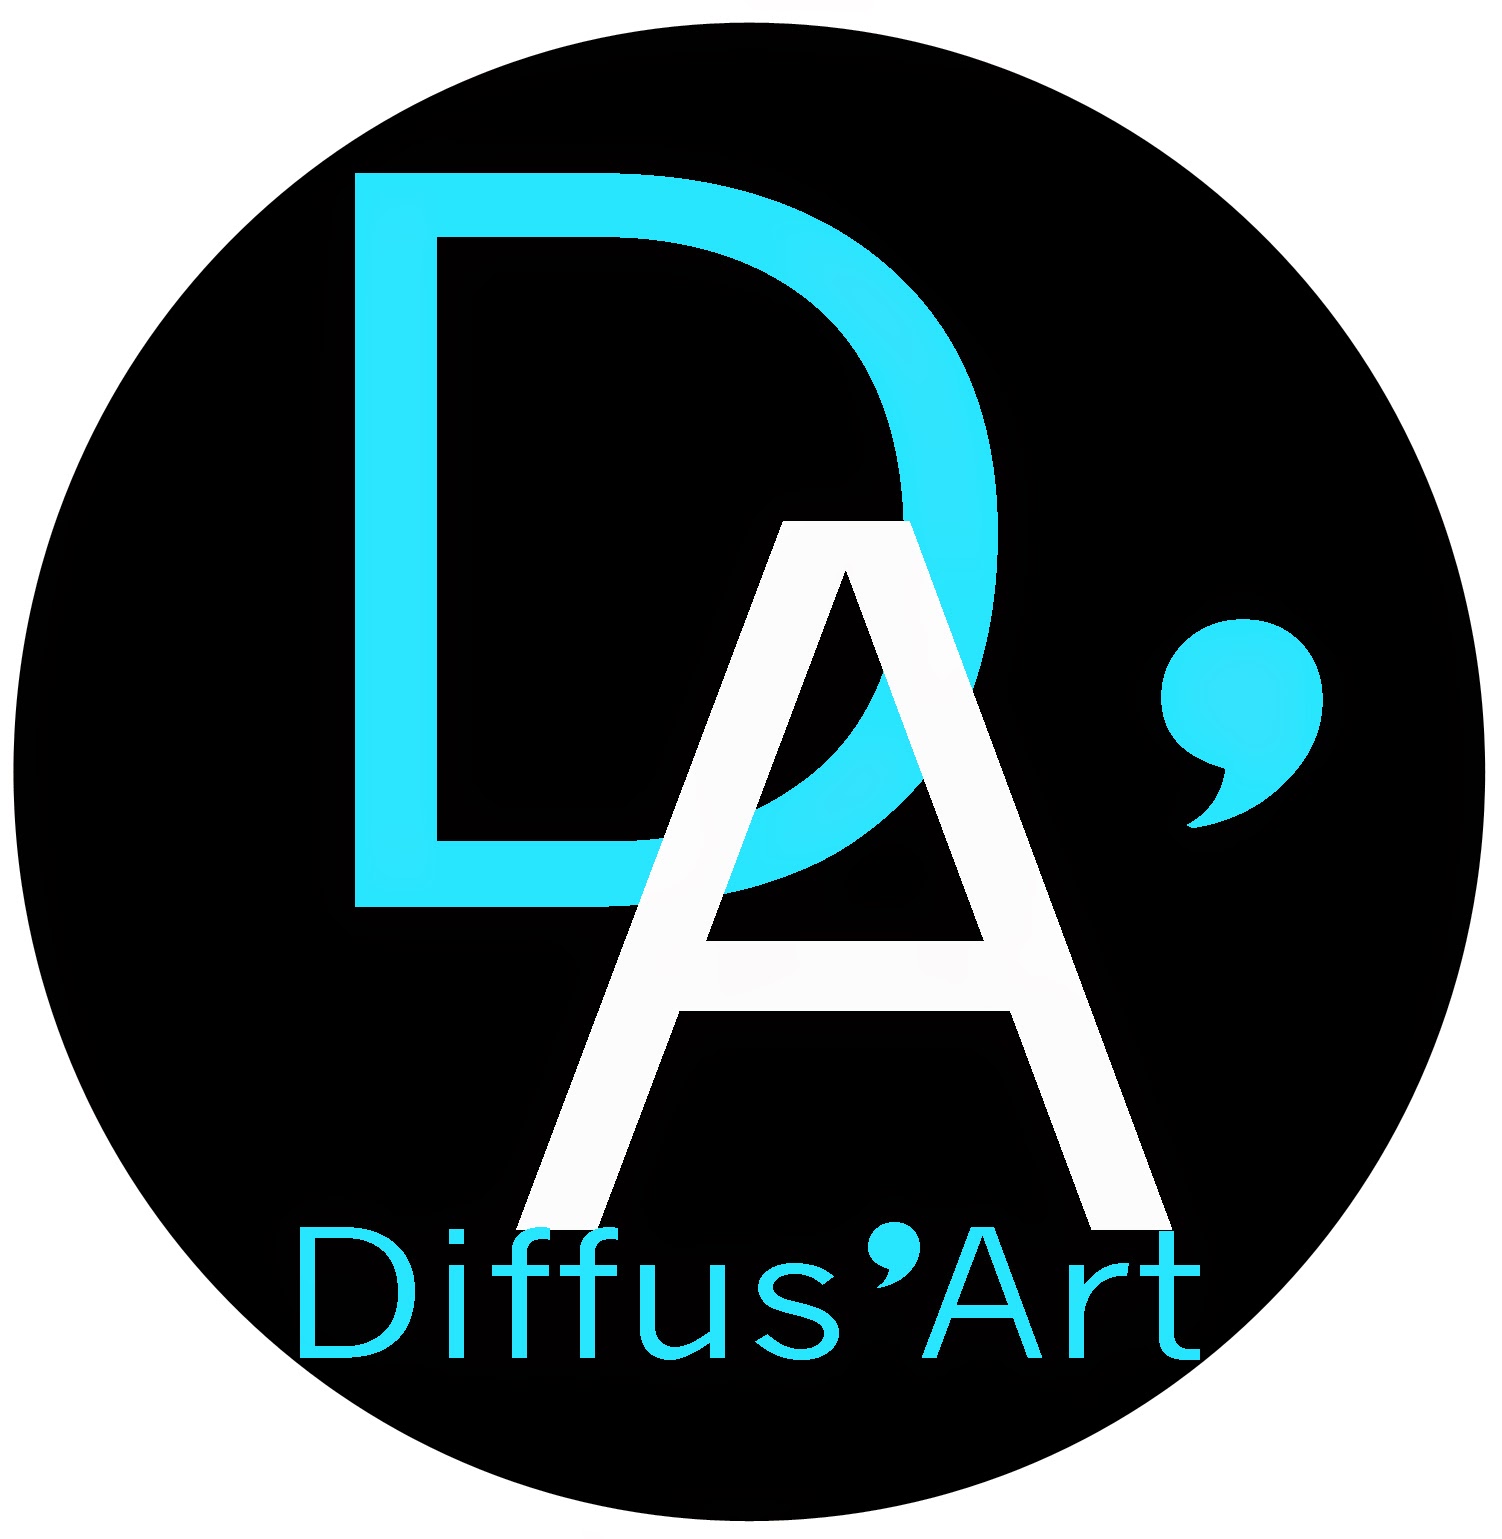 Diffus'Art